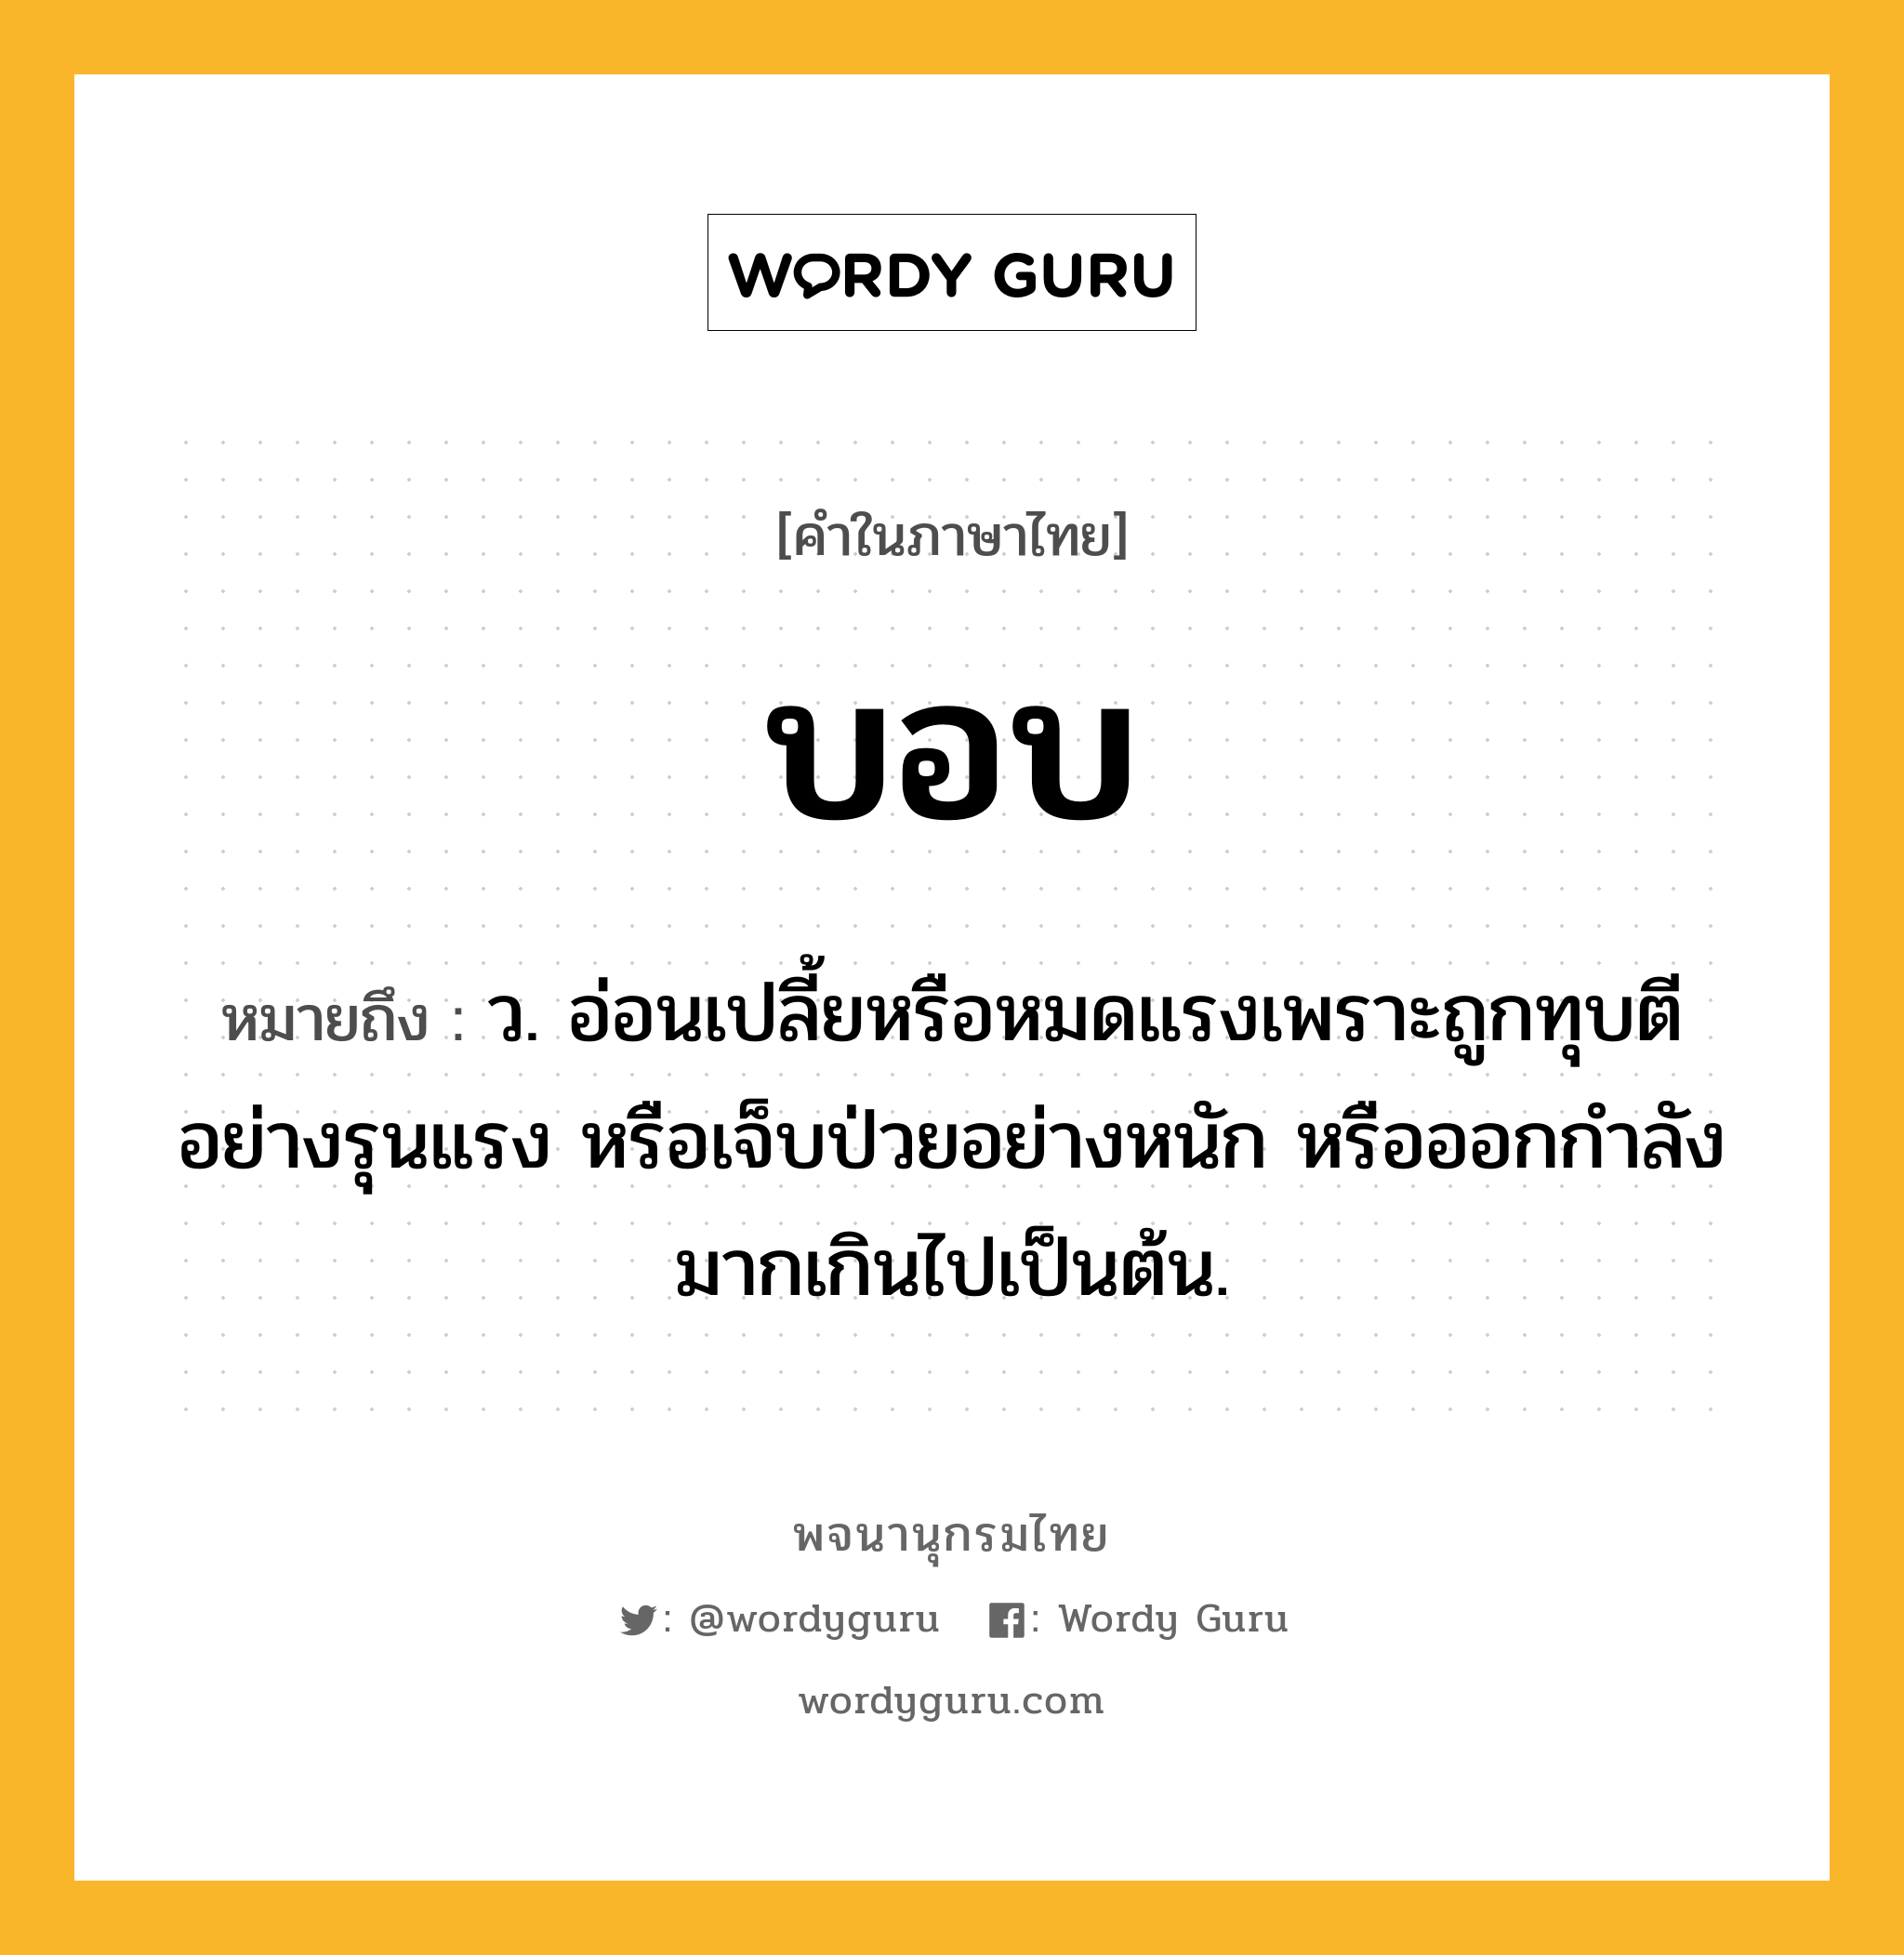 บอบ หมายถึงอะไร?, คำในภาษาไทย บอบ หมายถึง ว. อ่อนเปลี้ยหรือหมดแรงเพราะถูกทุบตีอย่างรุนแรง หรือเจ็บป่วยอย่างหนัก หรือออกกําลังมากเกินไปเป็นต้น.